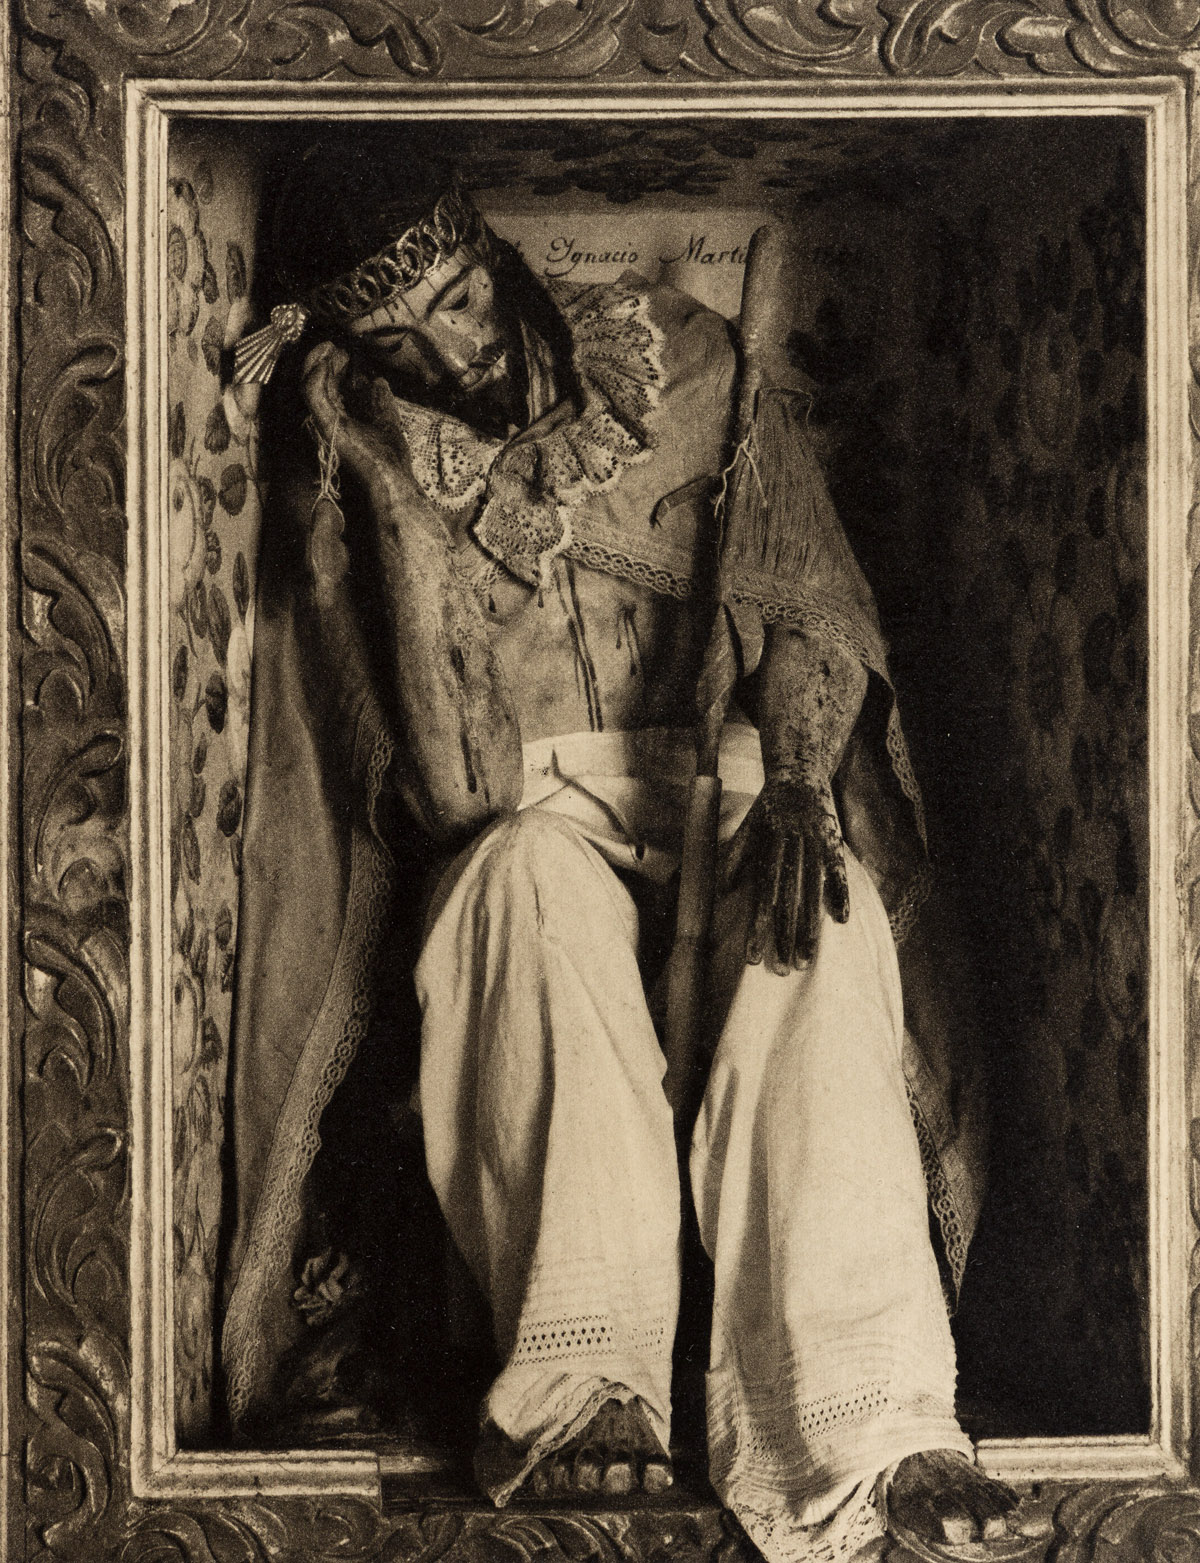 PAUL STRAND (1890-1976) Portfolio entitled I. Photographs of Mexico [The Mexican Portfolio].